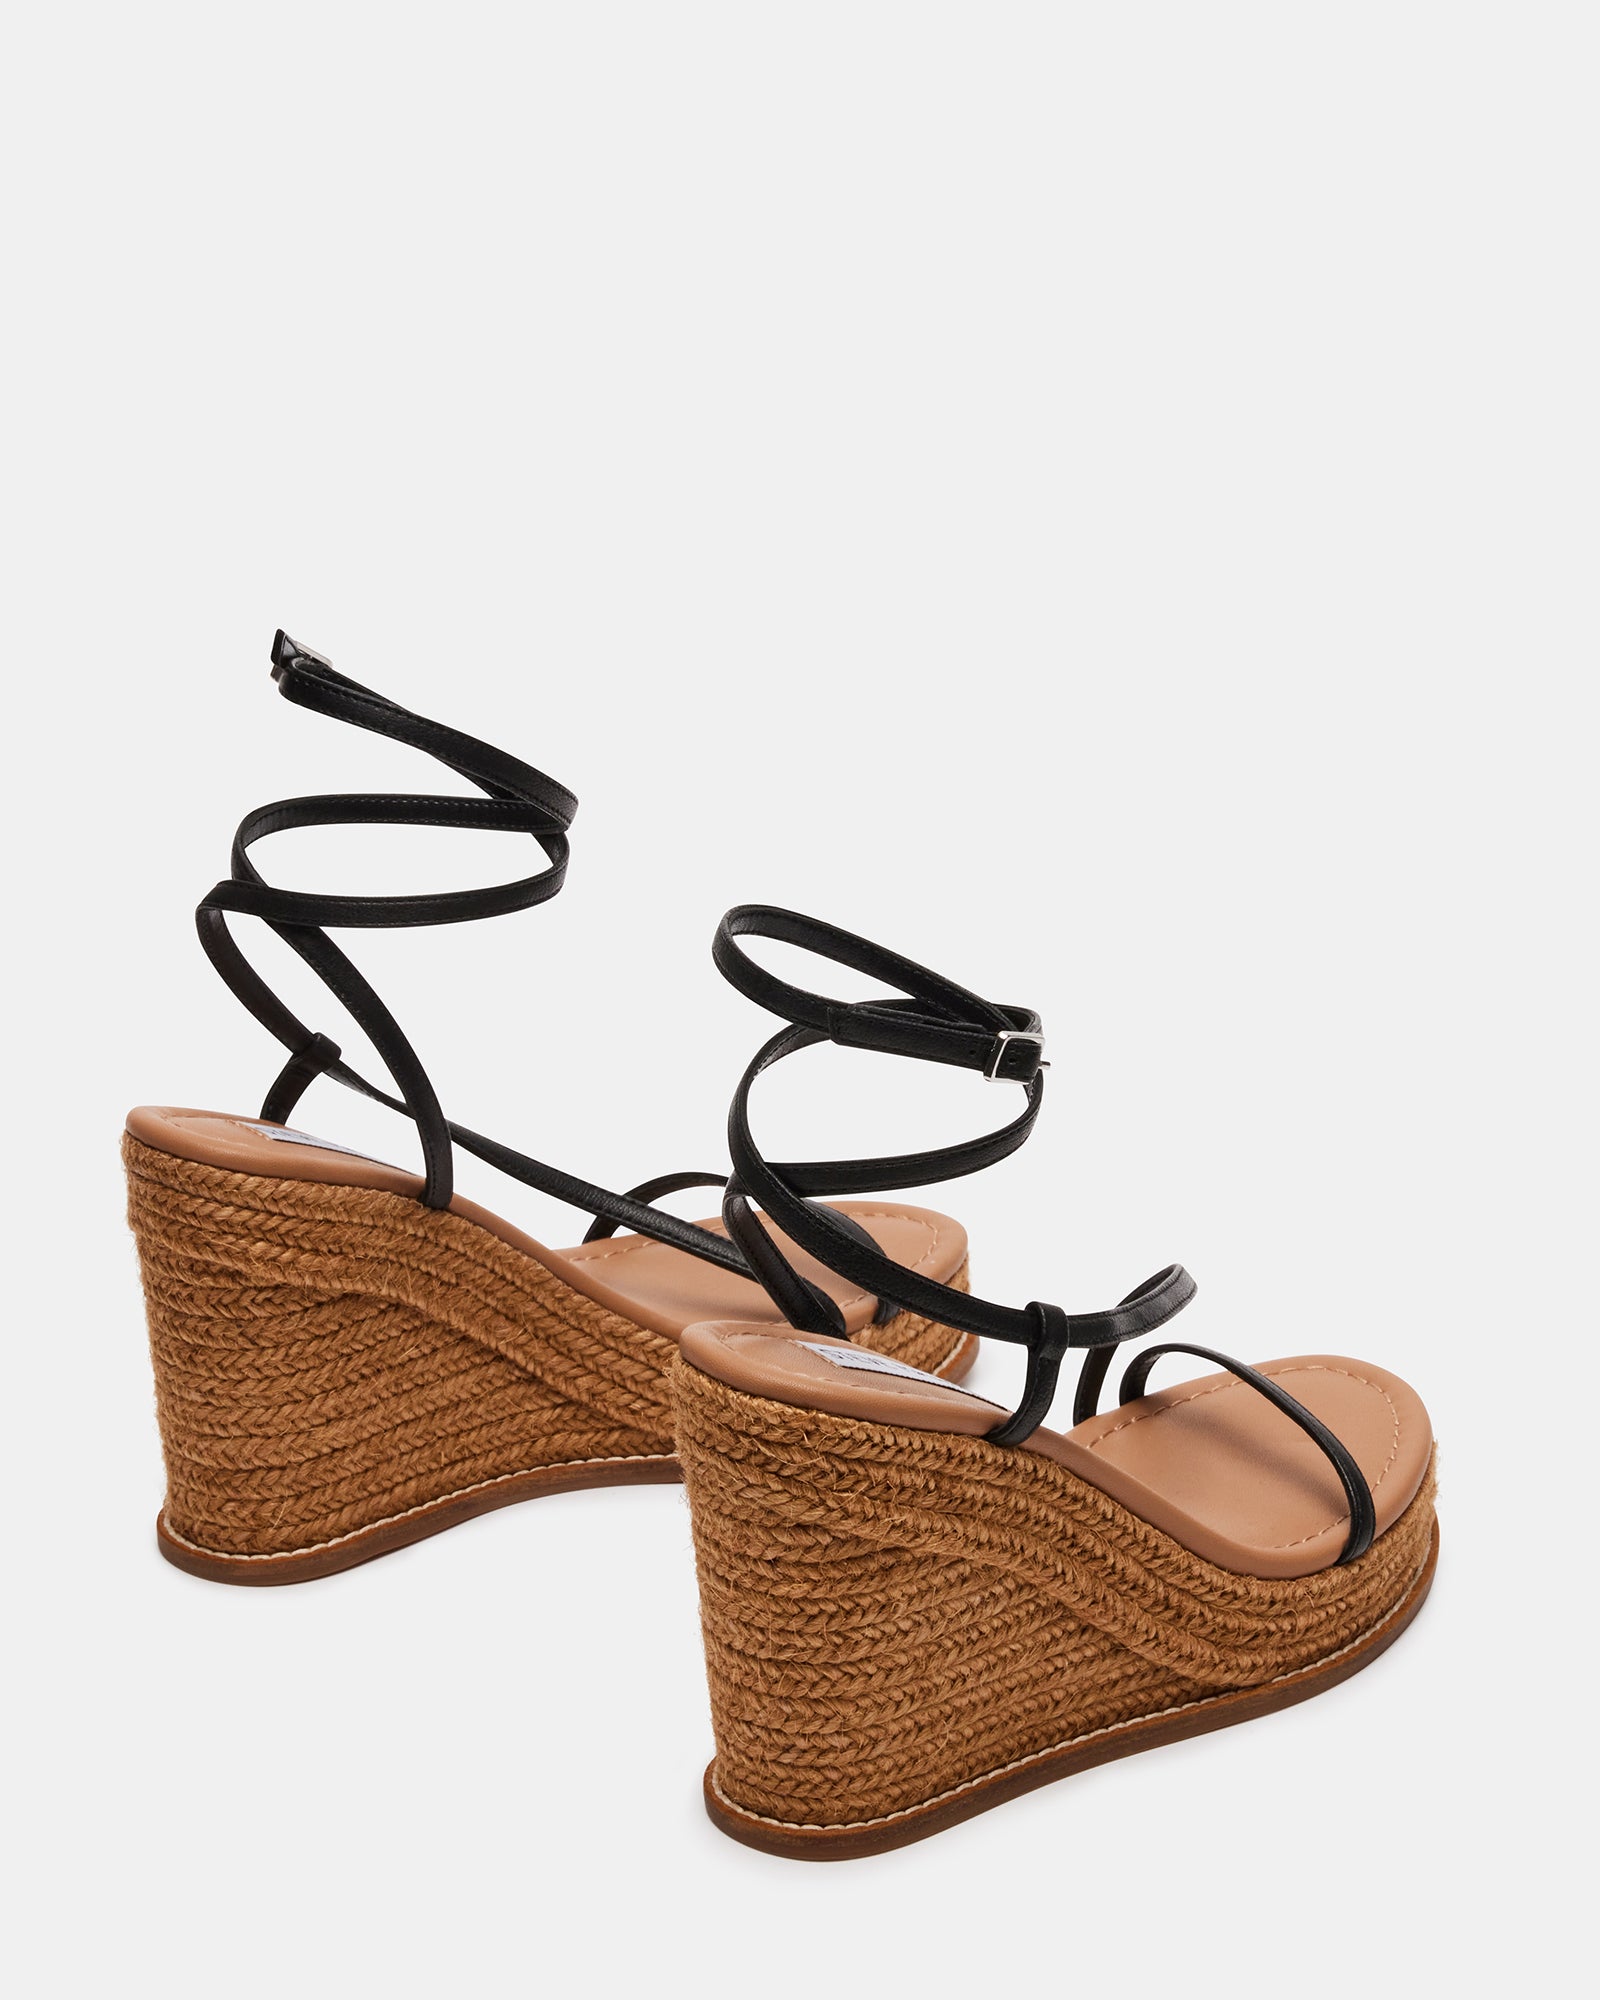 SOMMER Black Leather Strappy Wedge Sandal | Women's Sandals – Steve Madden